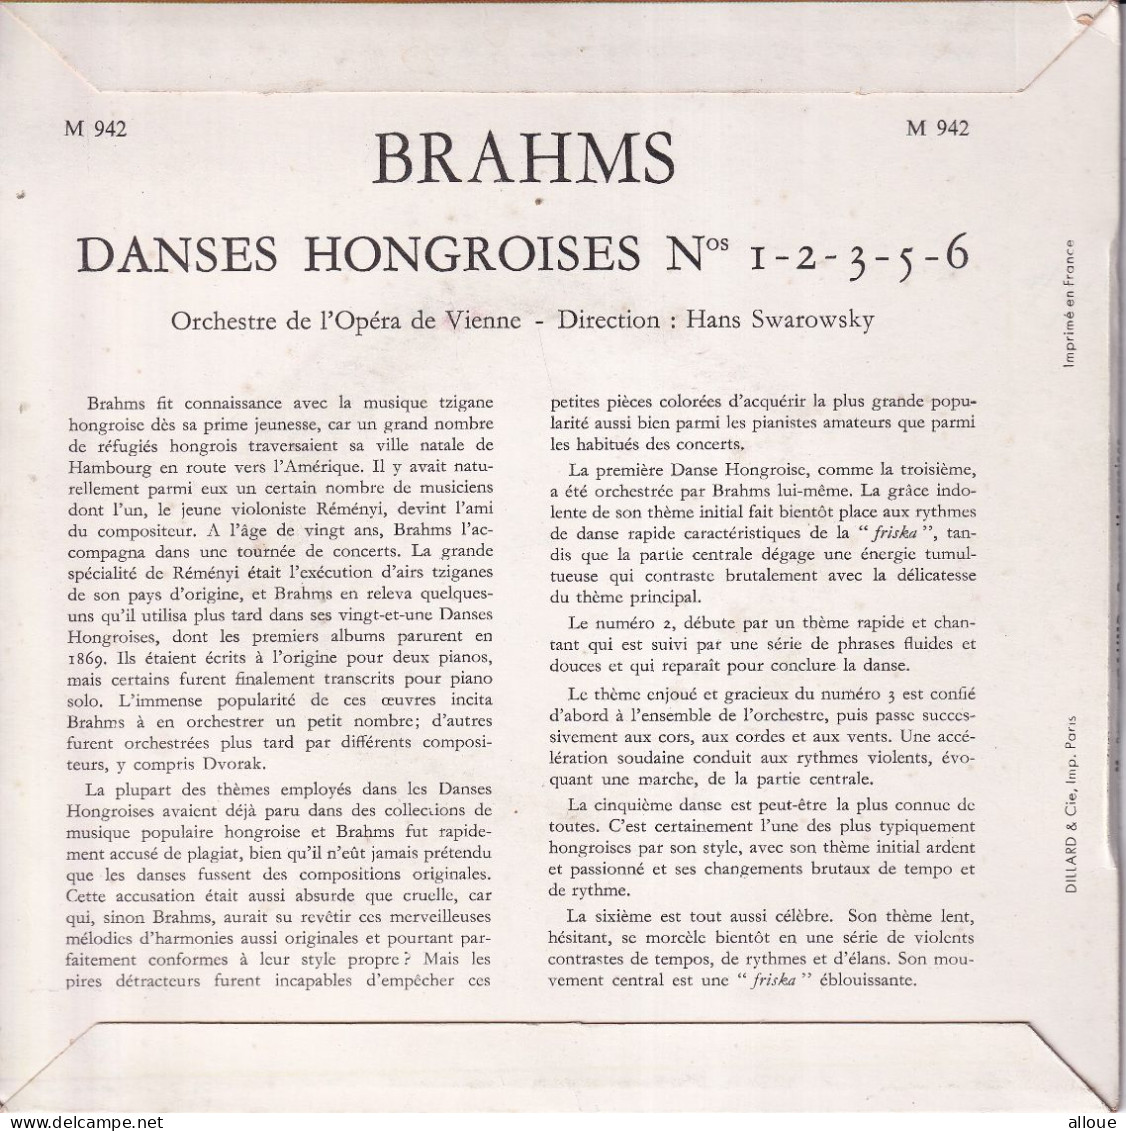 ORCHESTRE DE L'OPERA DE VIENNE - DIRECTION HANS SWAROWSKY - FR EP - BRAHMS - DANCES HONGROISES - Klassiekers